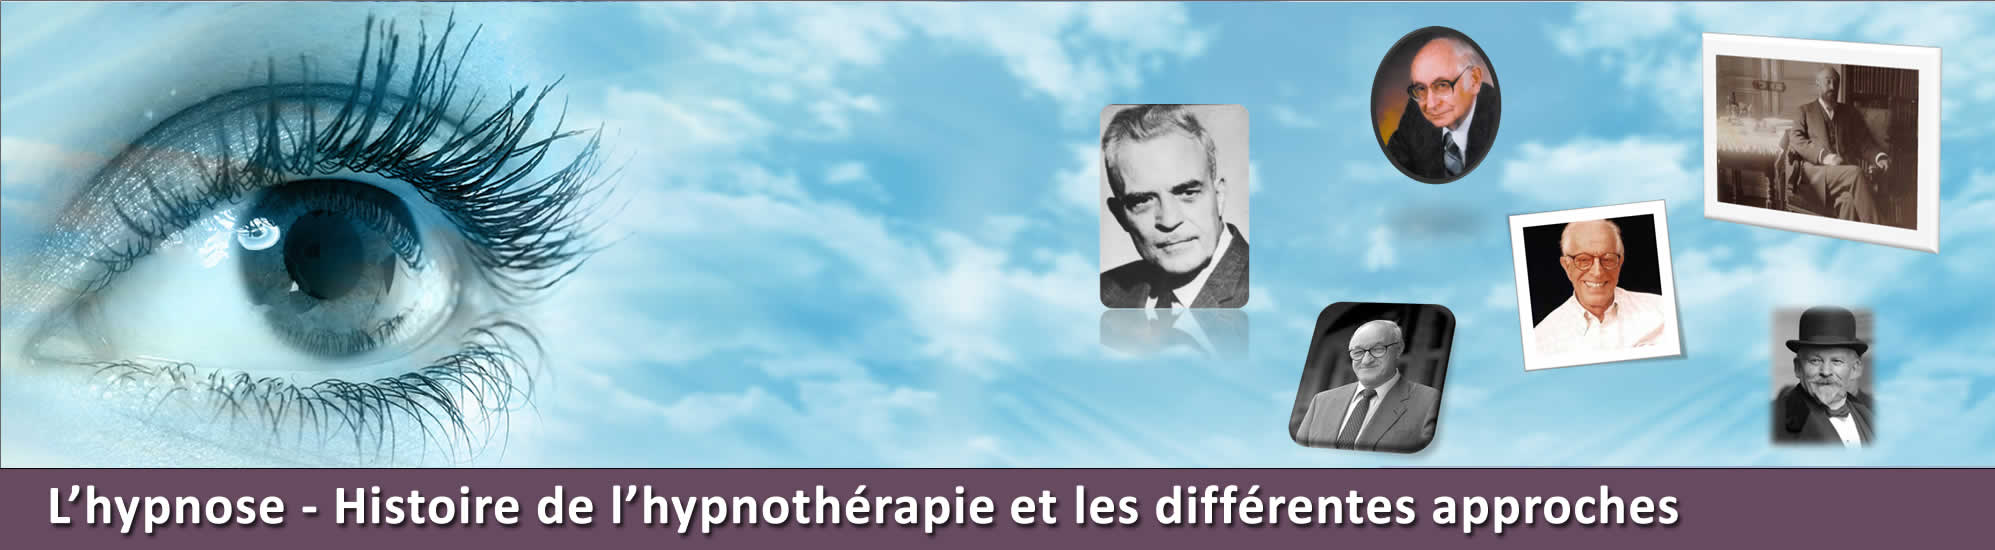 Hypnose Francophone Association école formation en hypnothérapie